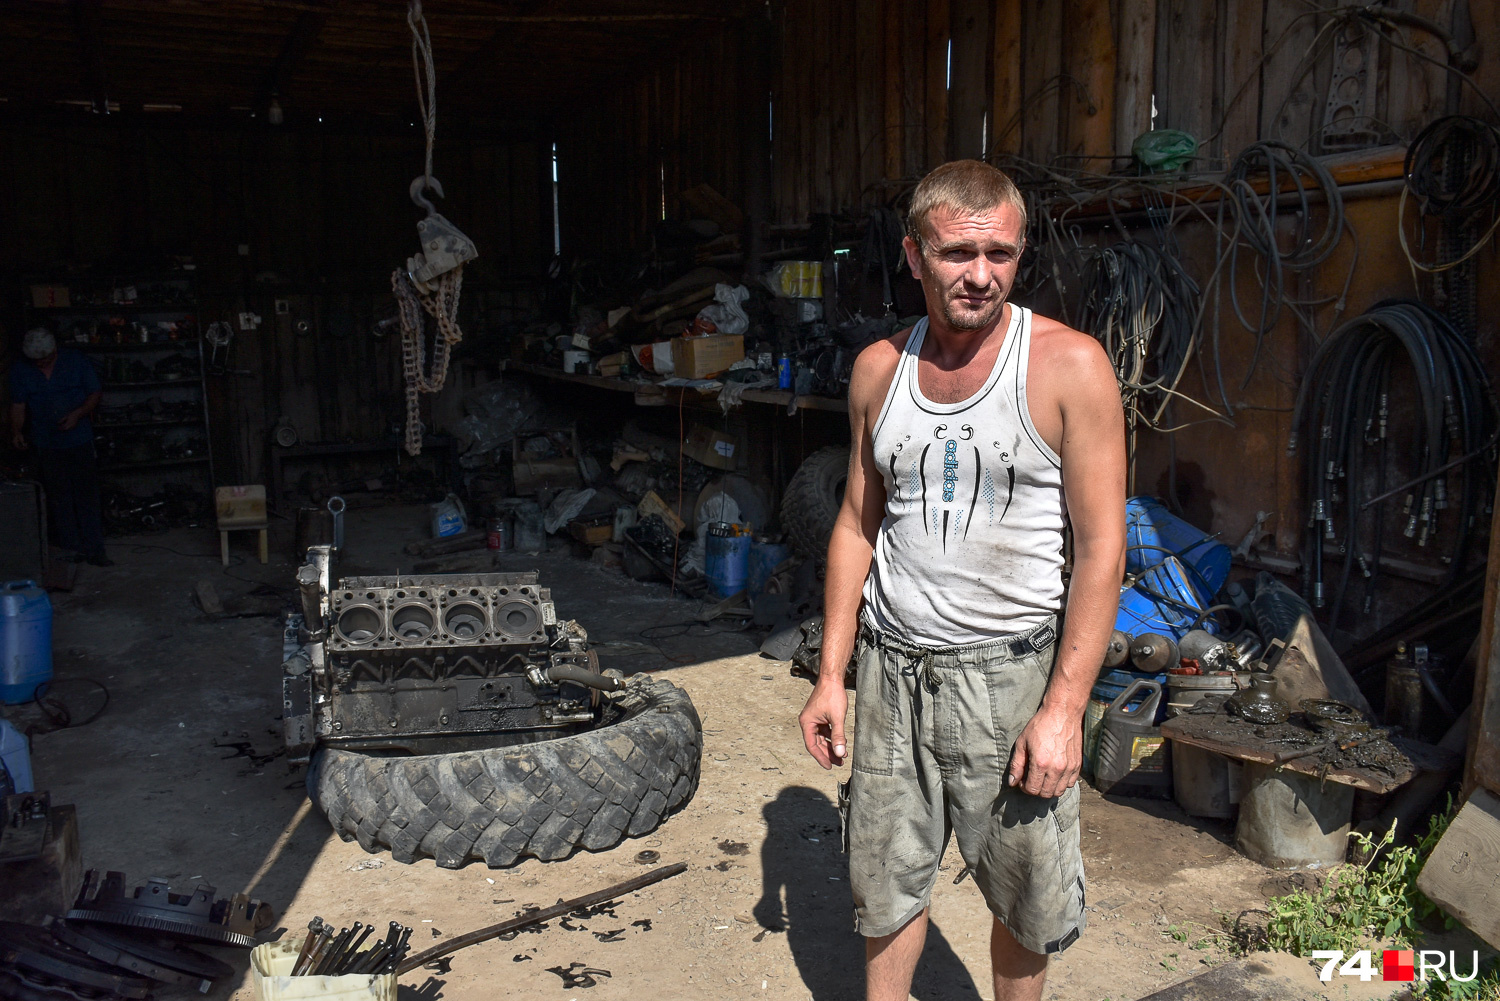 Автослесаря Алексея толчки не напугали, да и разрушений в его доме не было. А через пару недель к землетрясениям здесь привыкли все